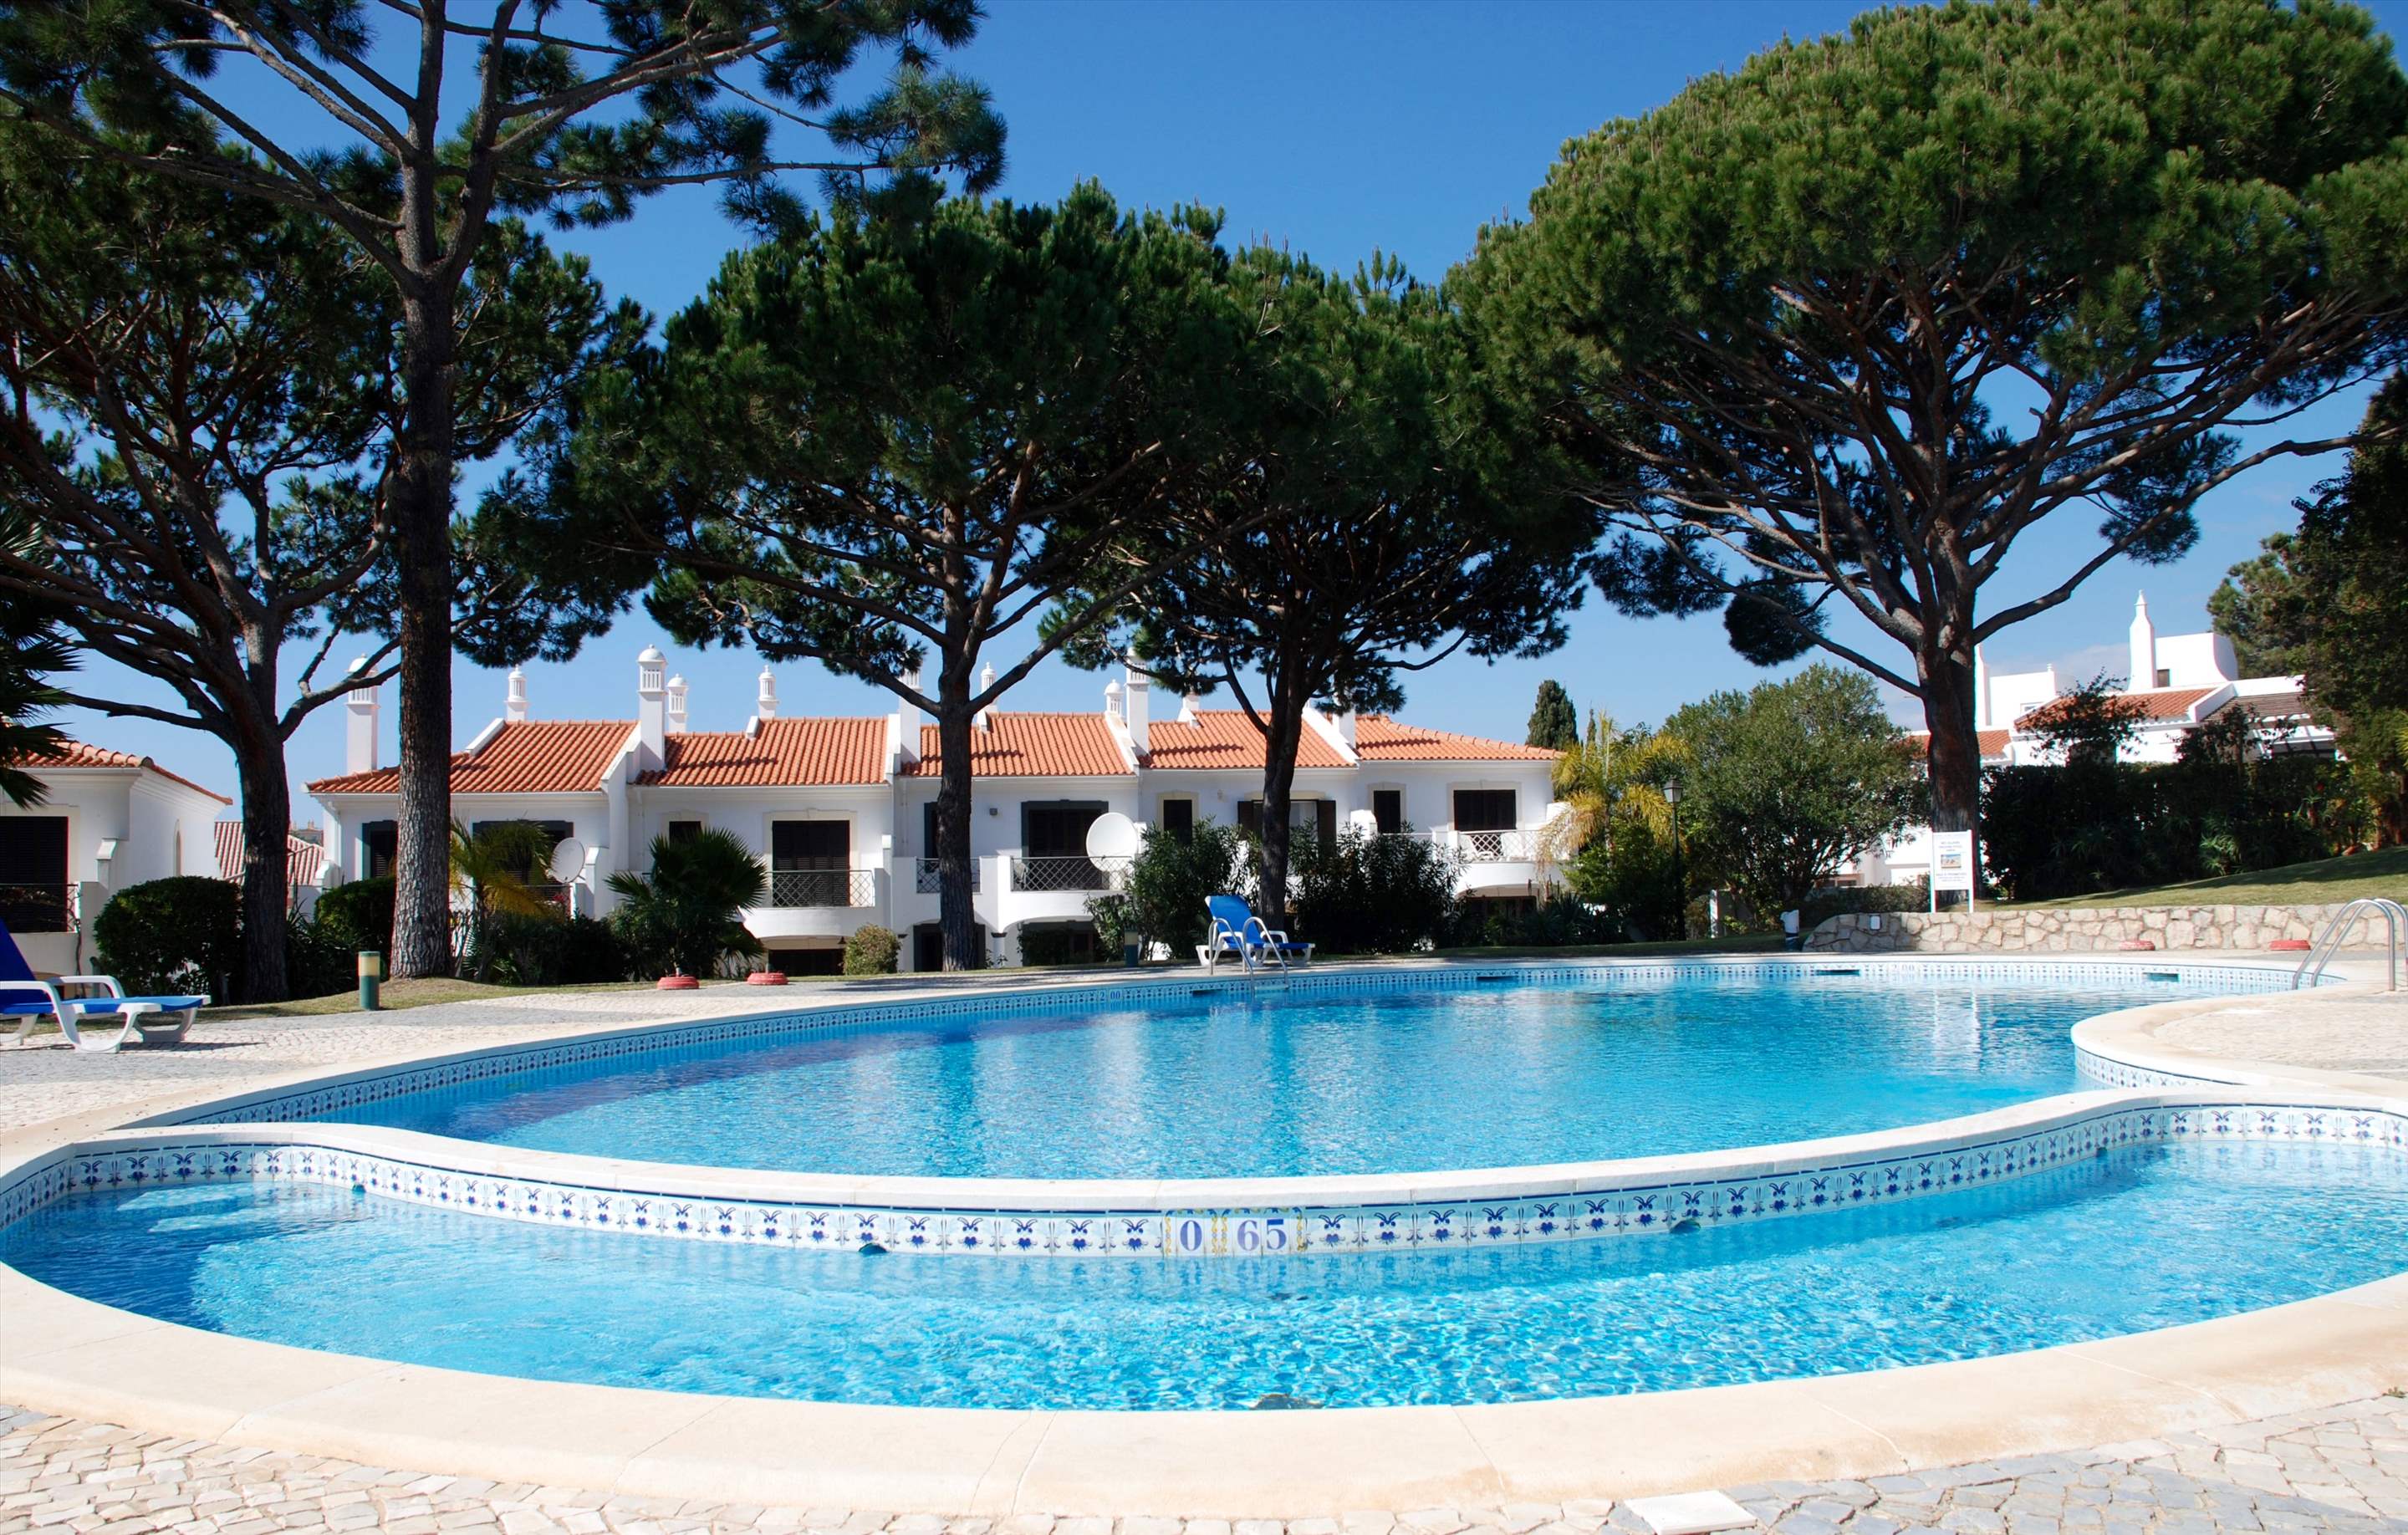 Quinta Amora, 3 bedroom villa in Quinta do Lago, Algarve